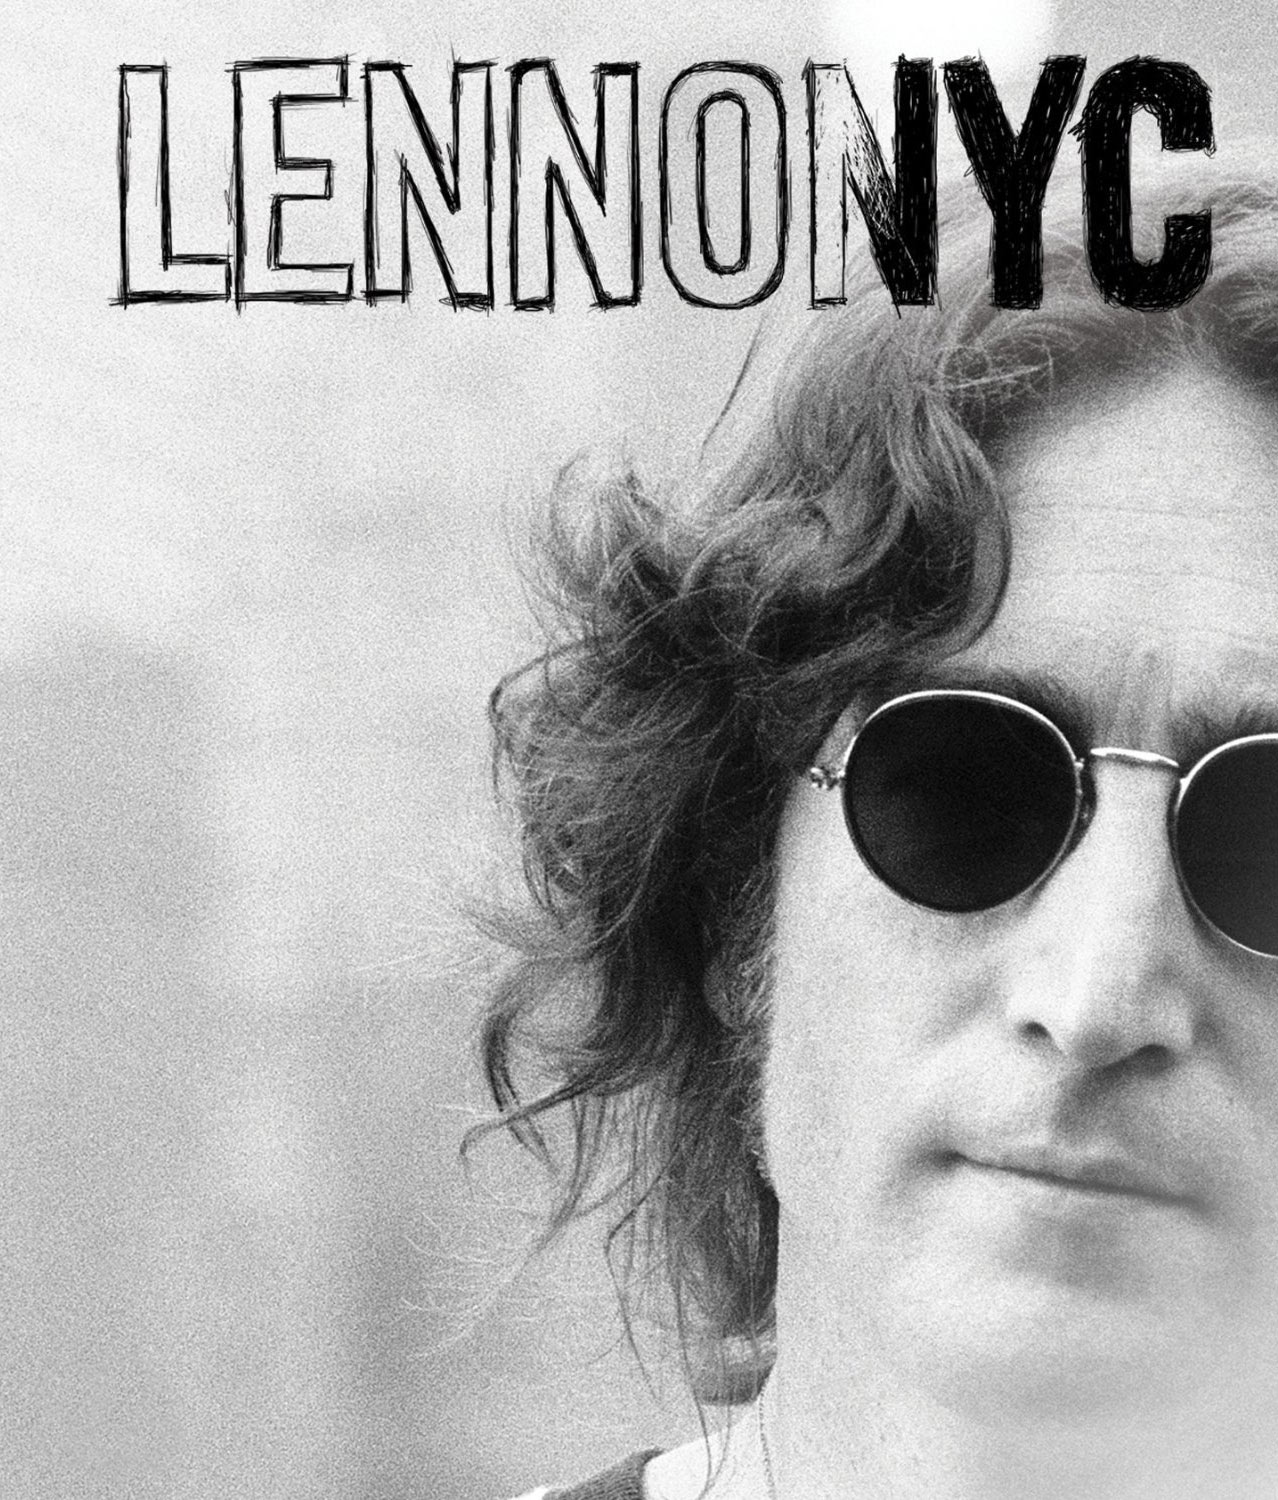 John Lennon Lennon NYC DVD packaging